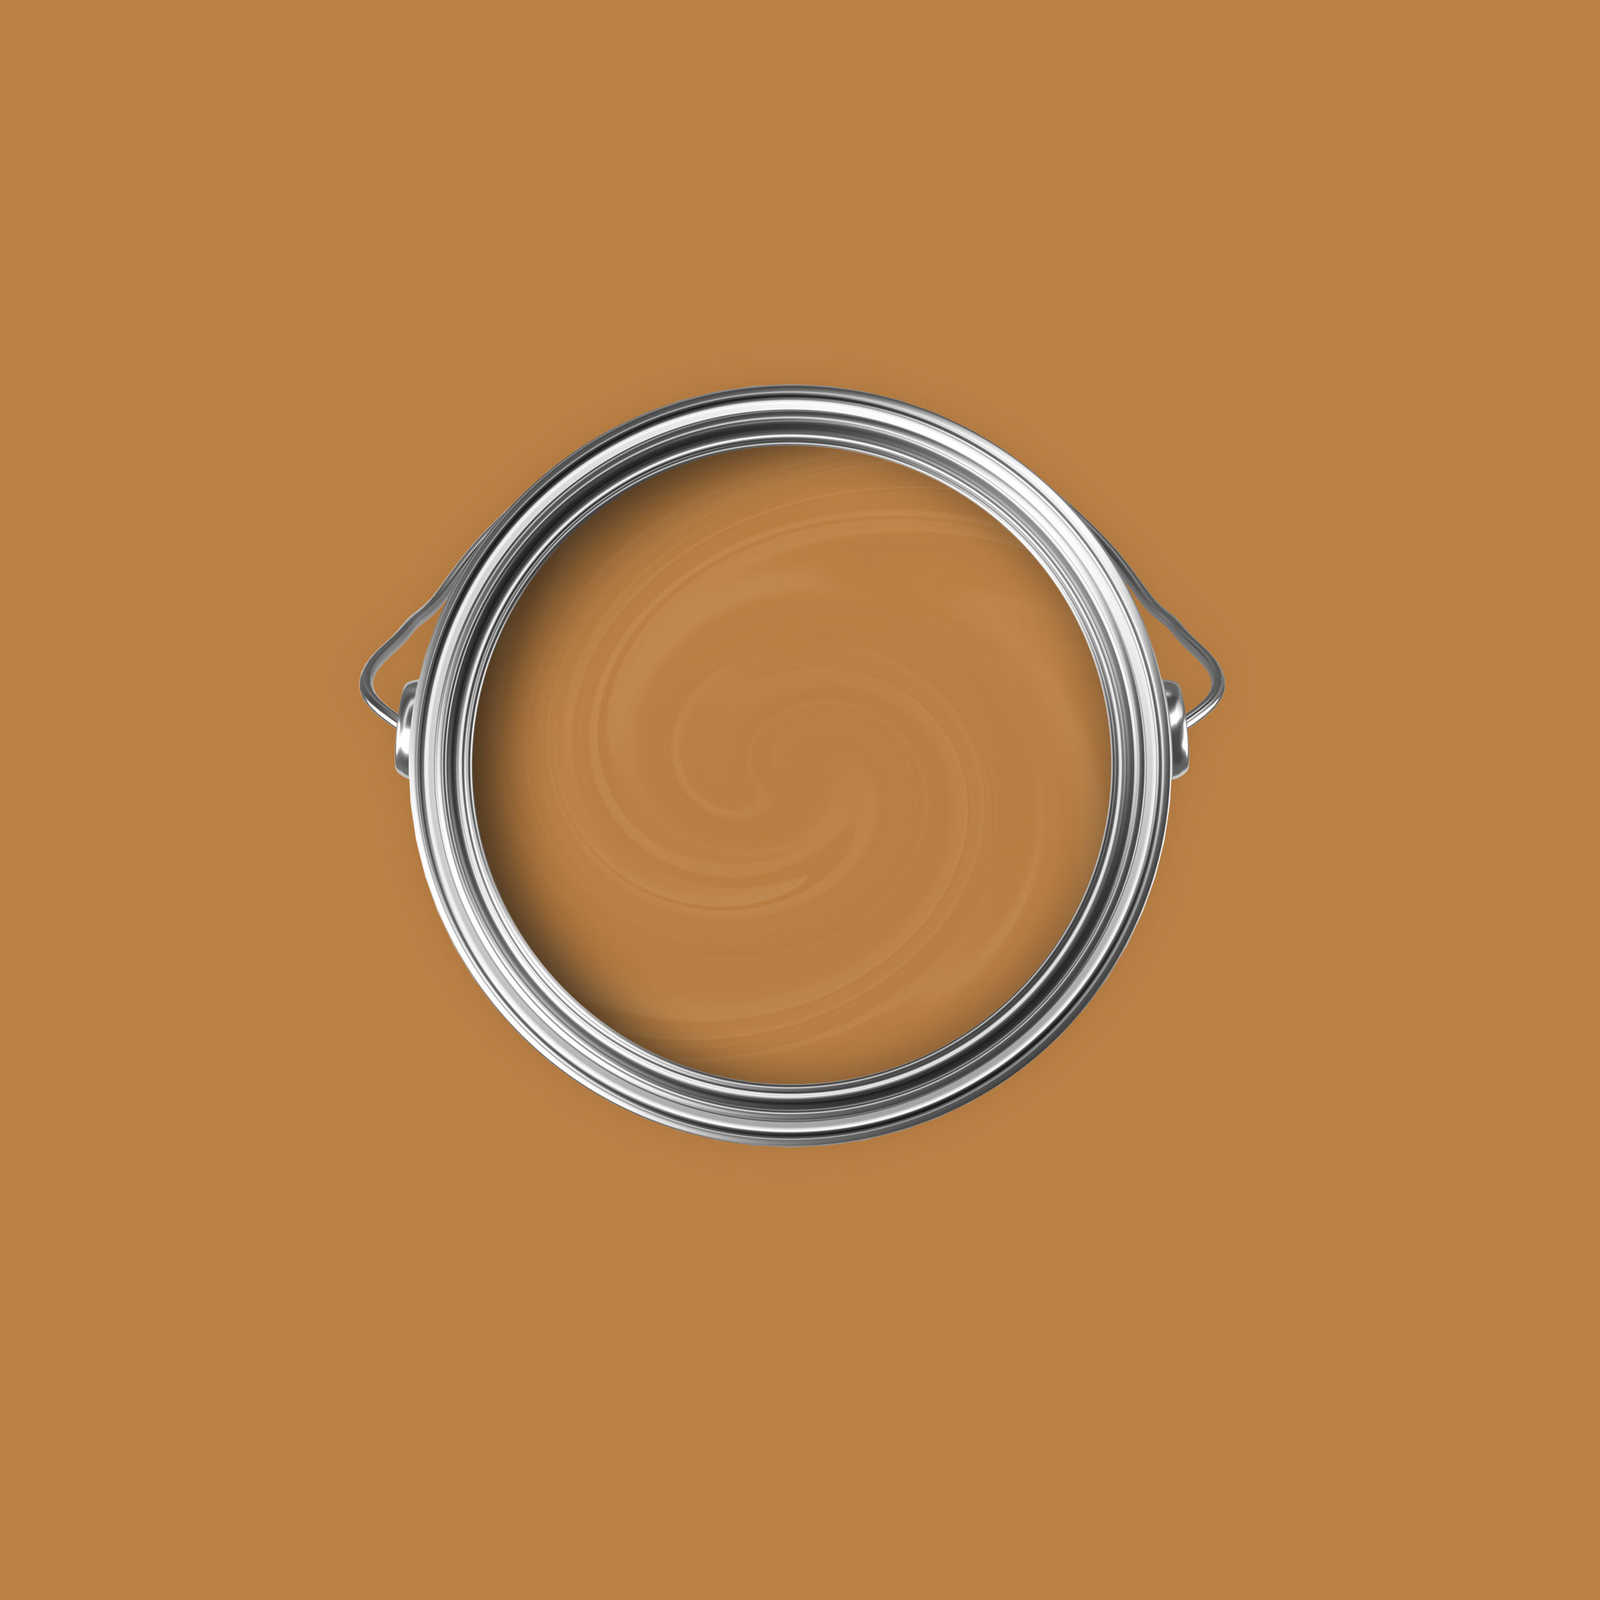             Premium Wandfarbe kräftiges Hellbraun »Beige Orange/Sassy Saffron« NW814 – 2,5 Liter
        